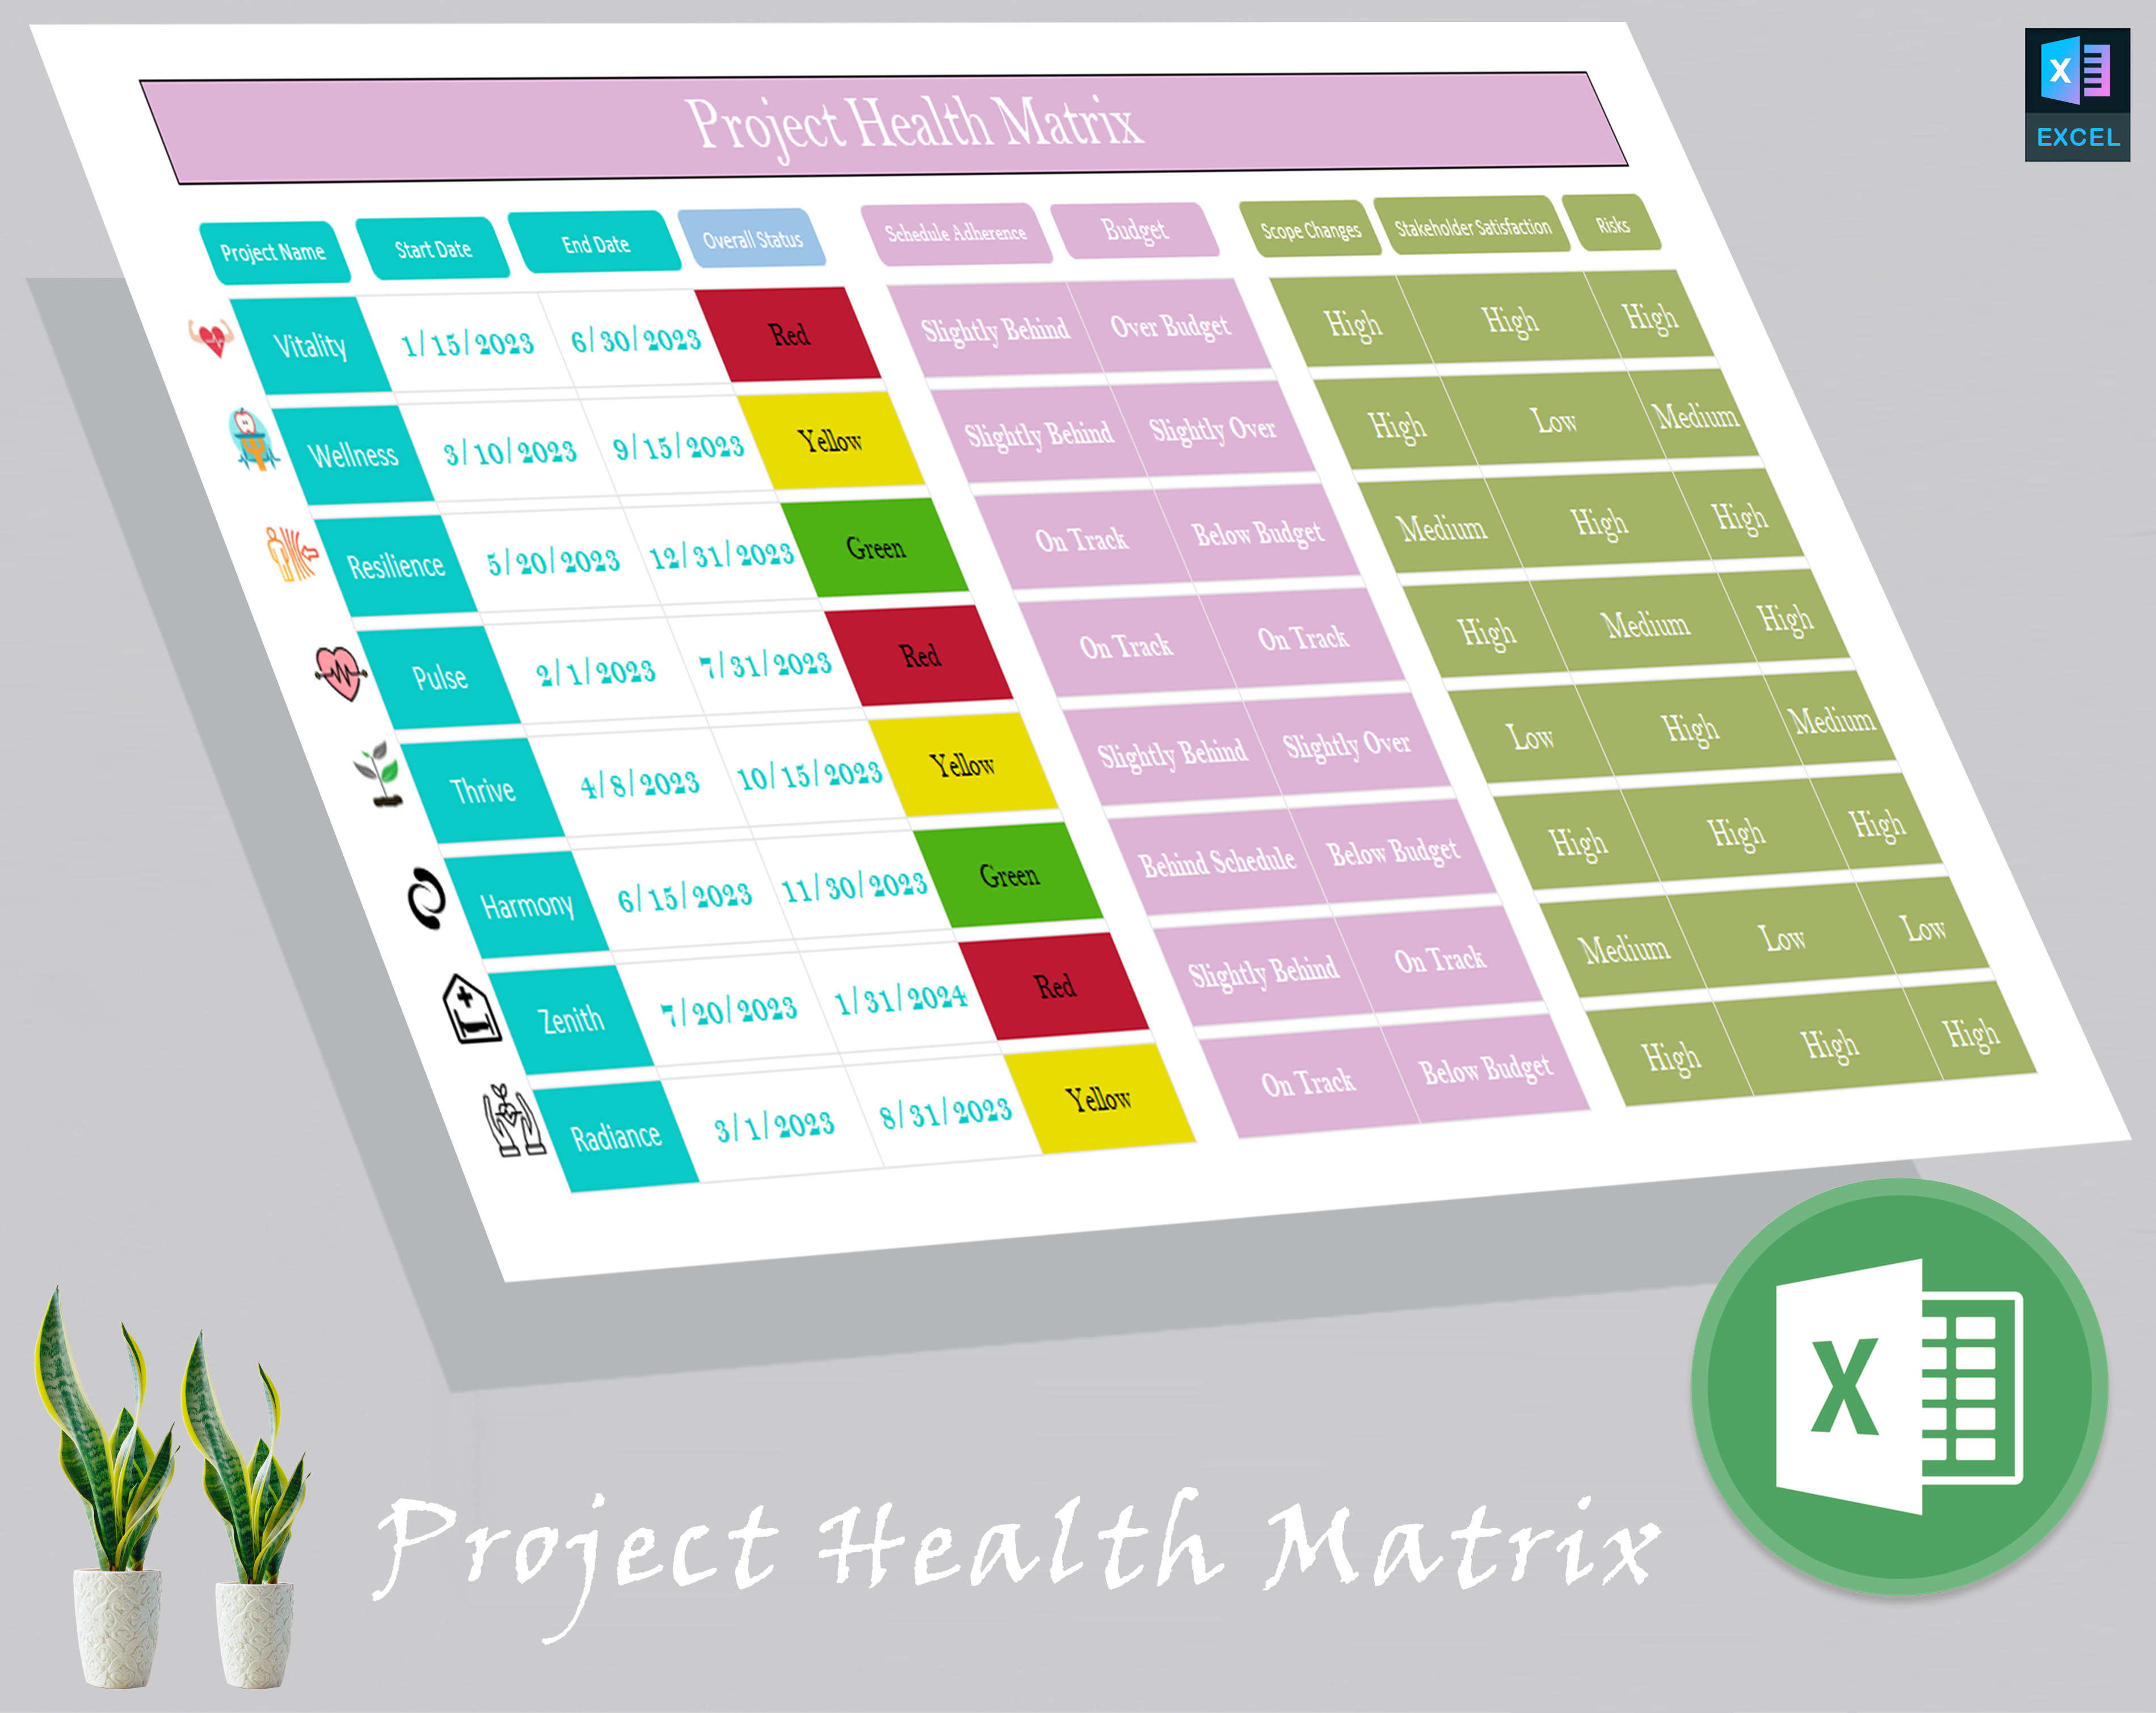 Project Health Matrix